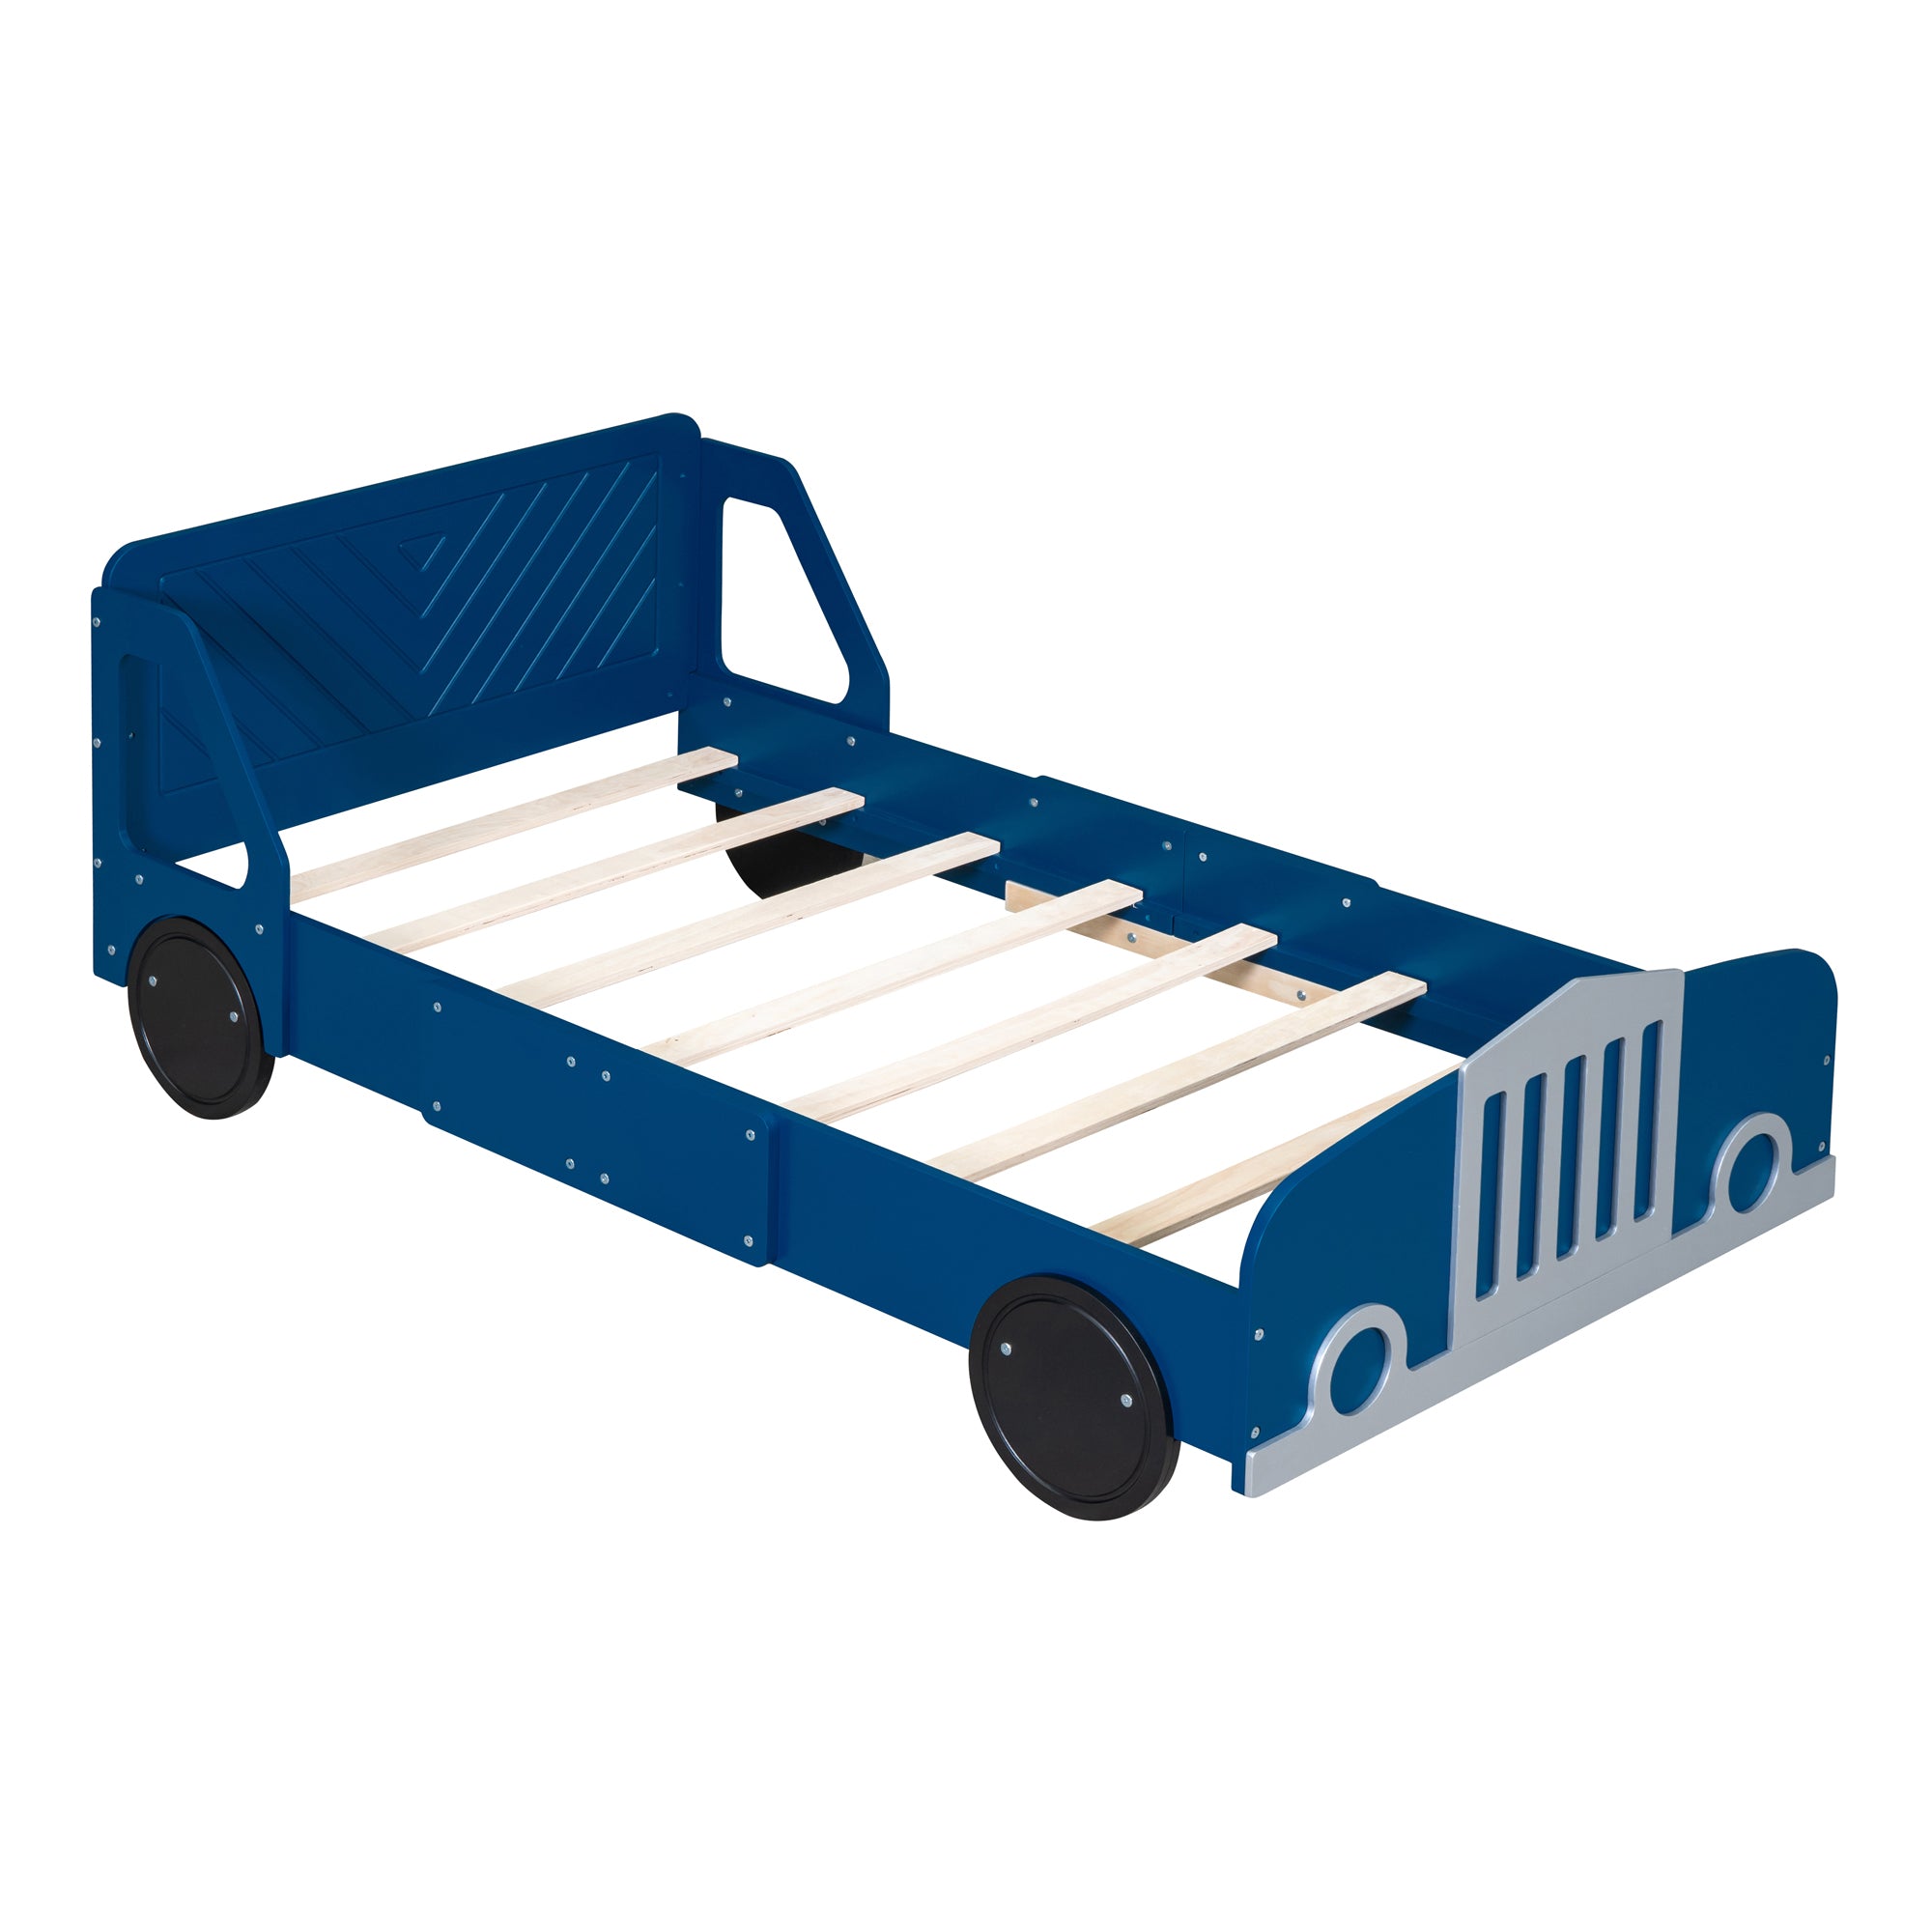 Bellemave Car-Shaped Platform Bed with Wheels